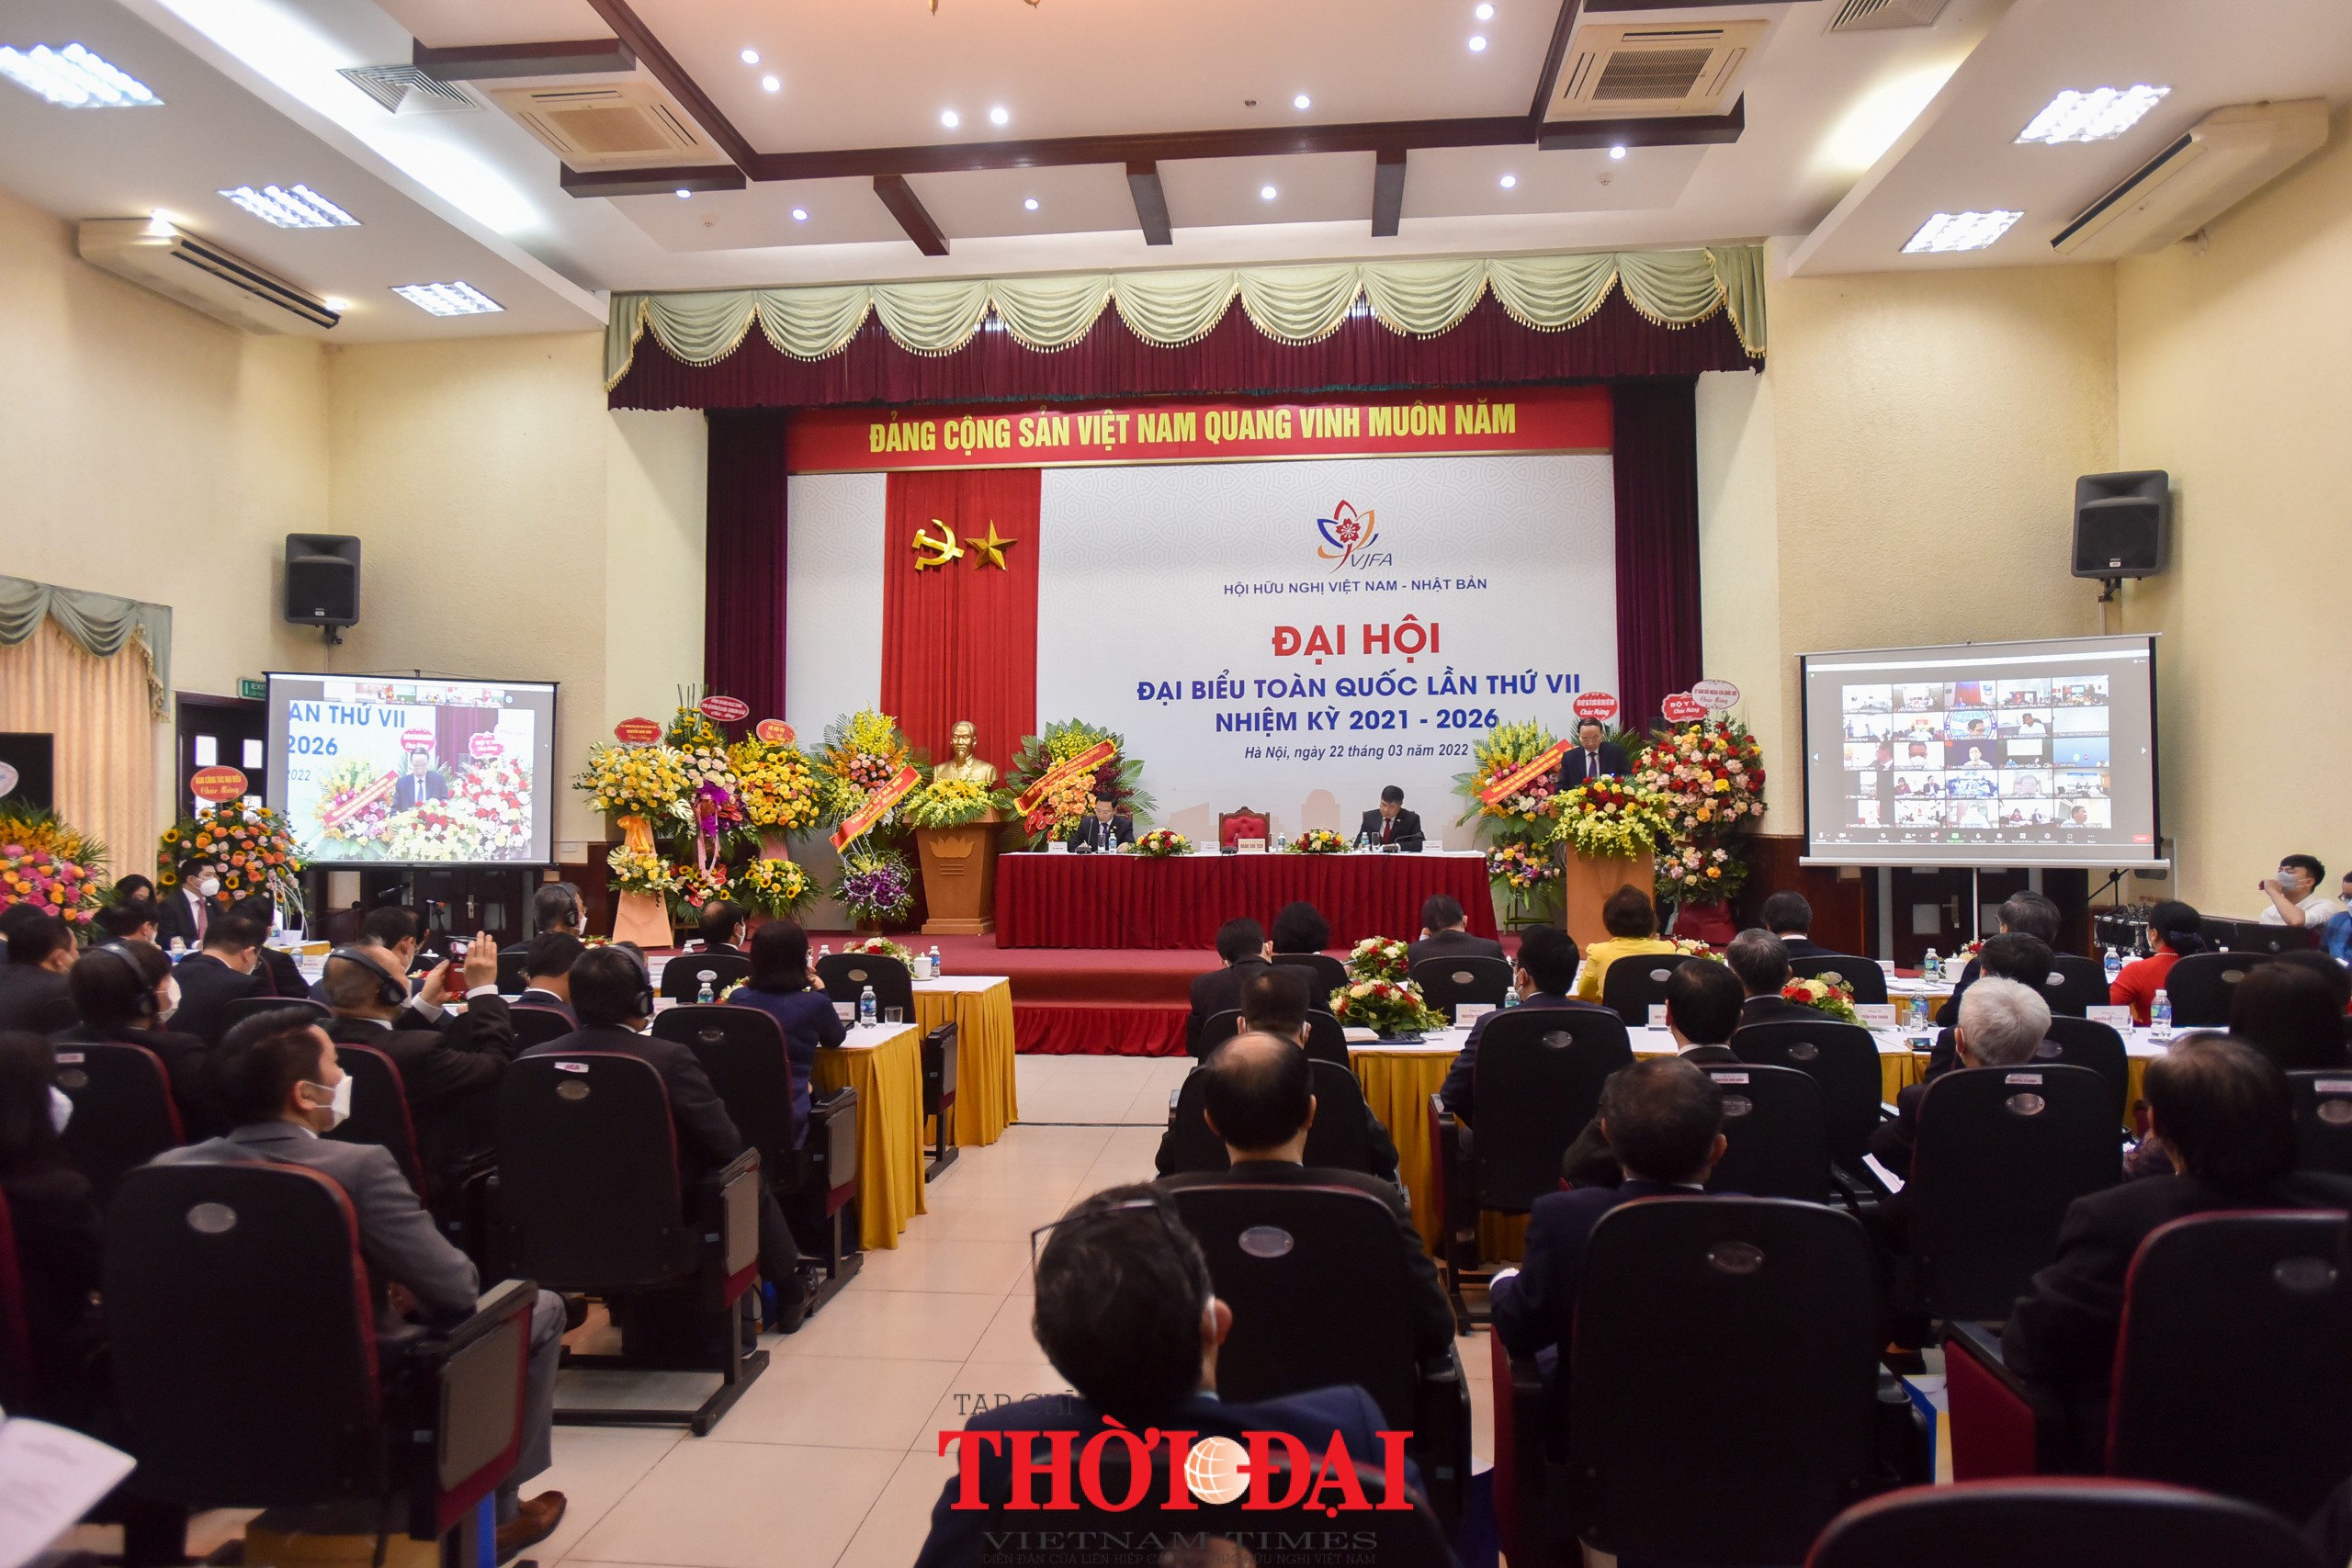 Tăng cường tình hữu nghị, sự quý mến và tin cậy lẫn nhau giữa nhân dân hai nước Việt Nam - Nhật Bản